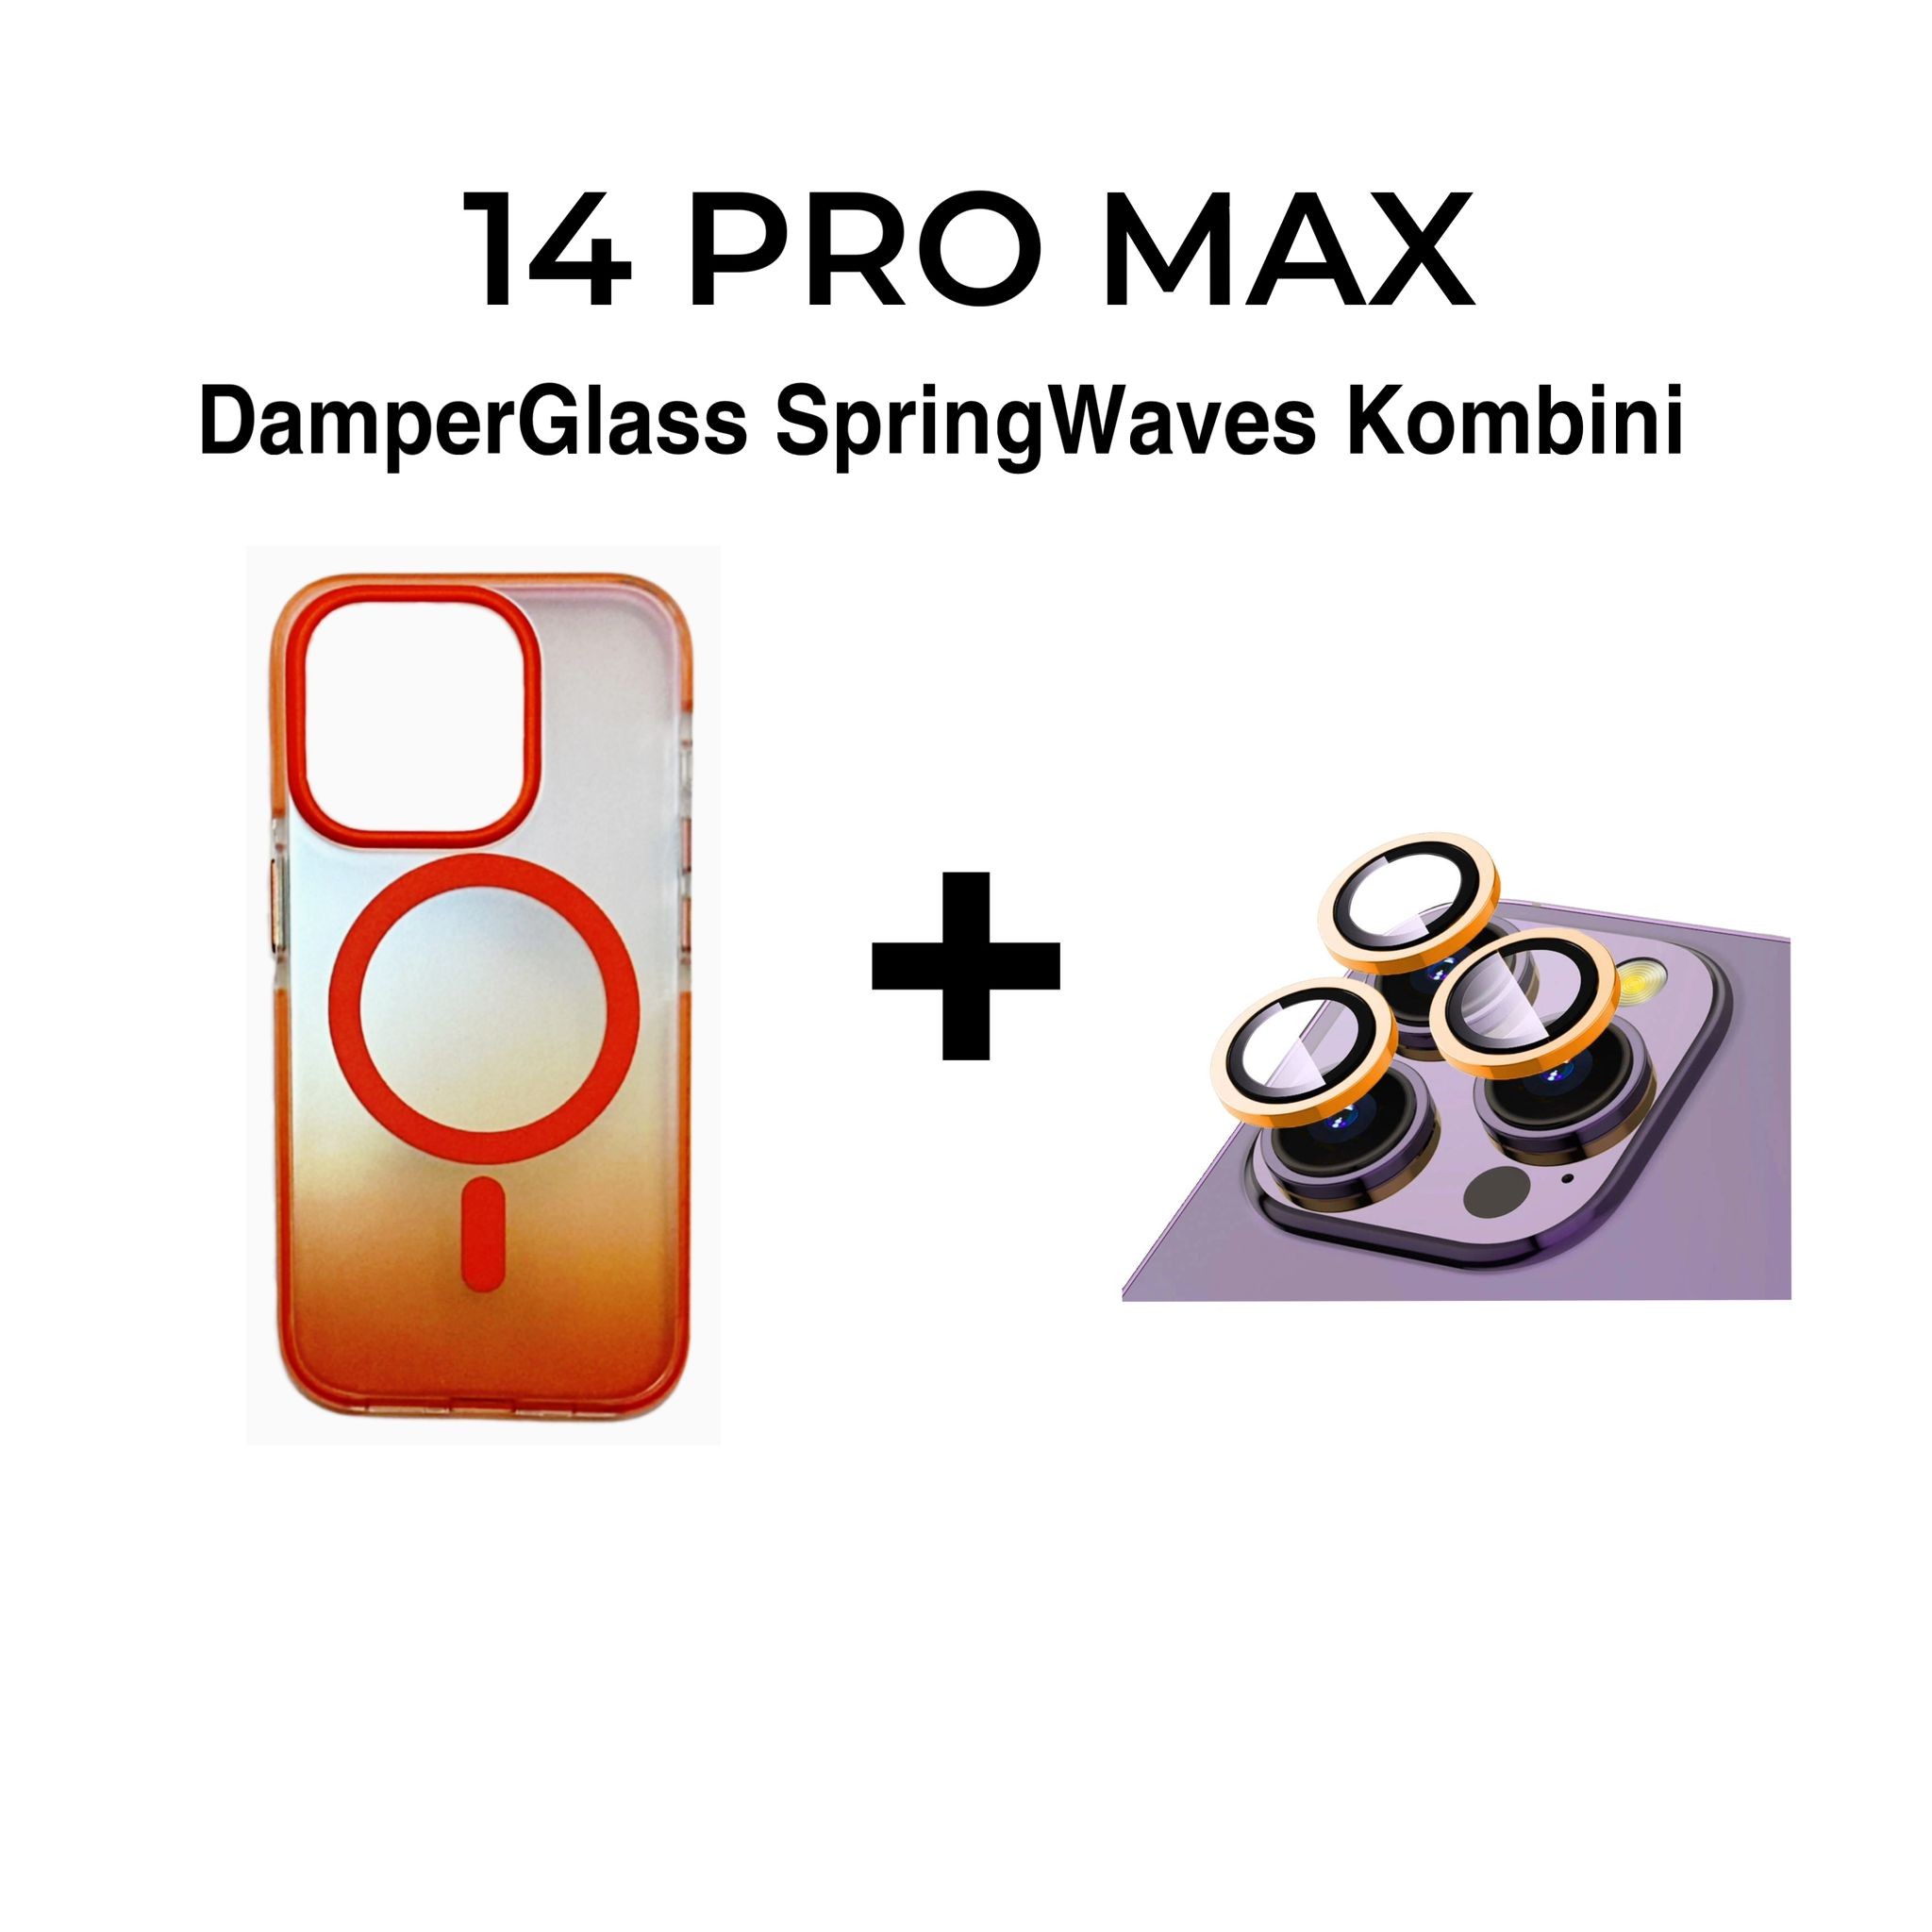 DamperGlass SpringWaves Serisi Turuncu Kombini for 14 Pro Max